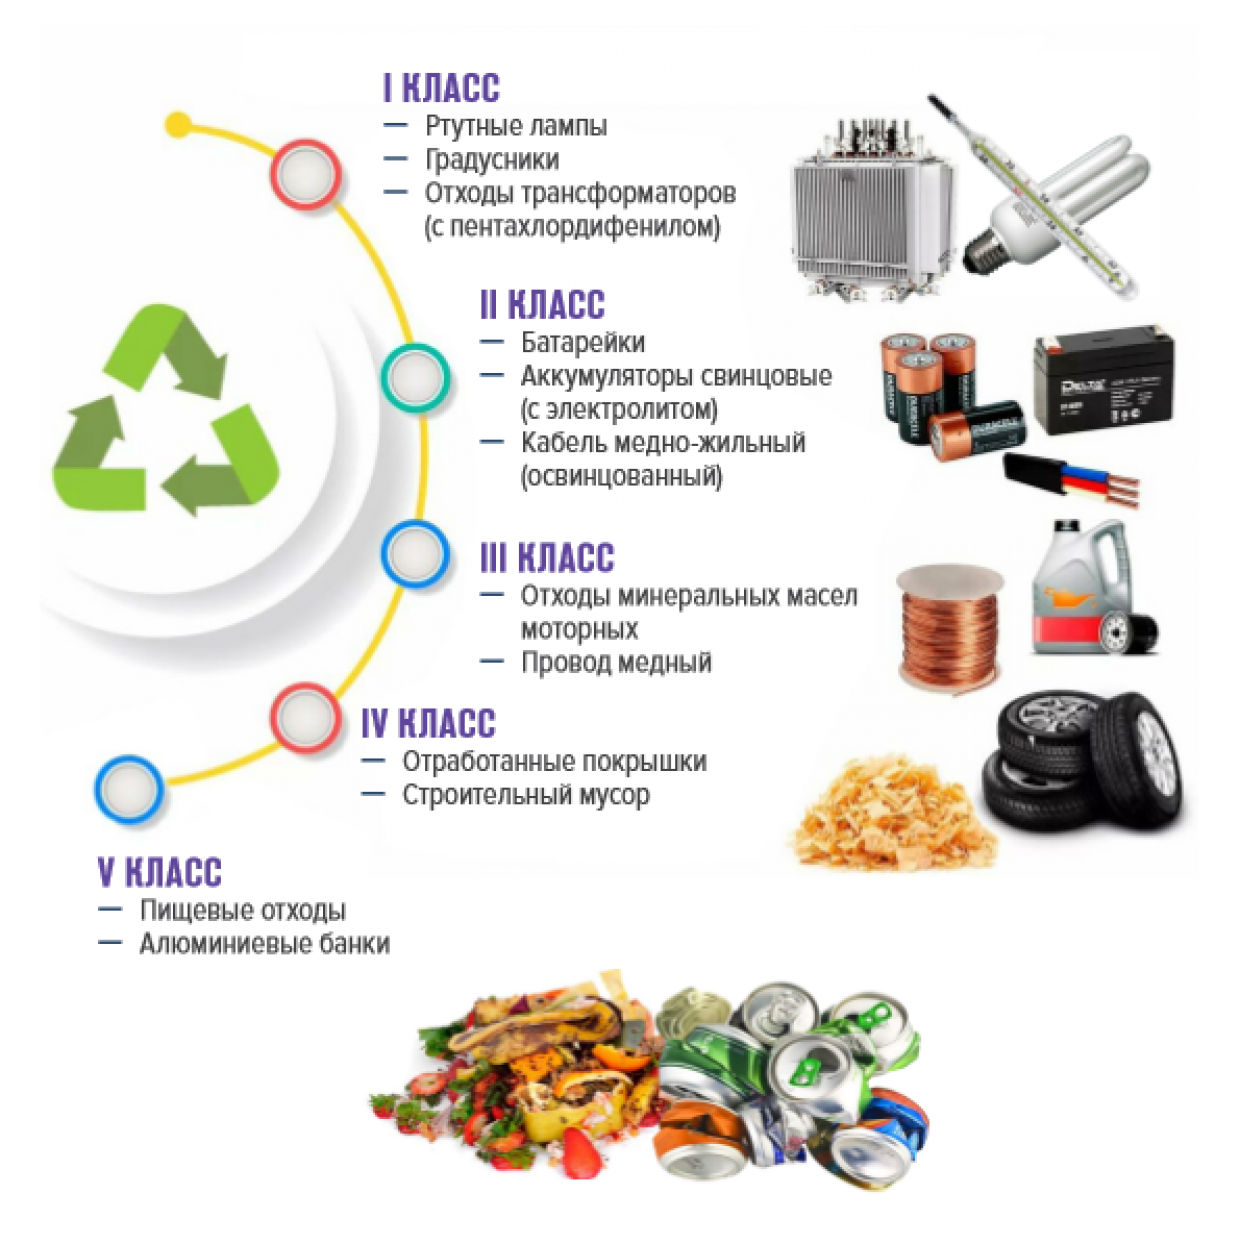 Сбор неопасных отходов. Переработка пищевых отходов. Использование пищевых отходов. Технологии переработки пищевых отходов.